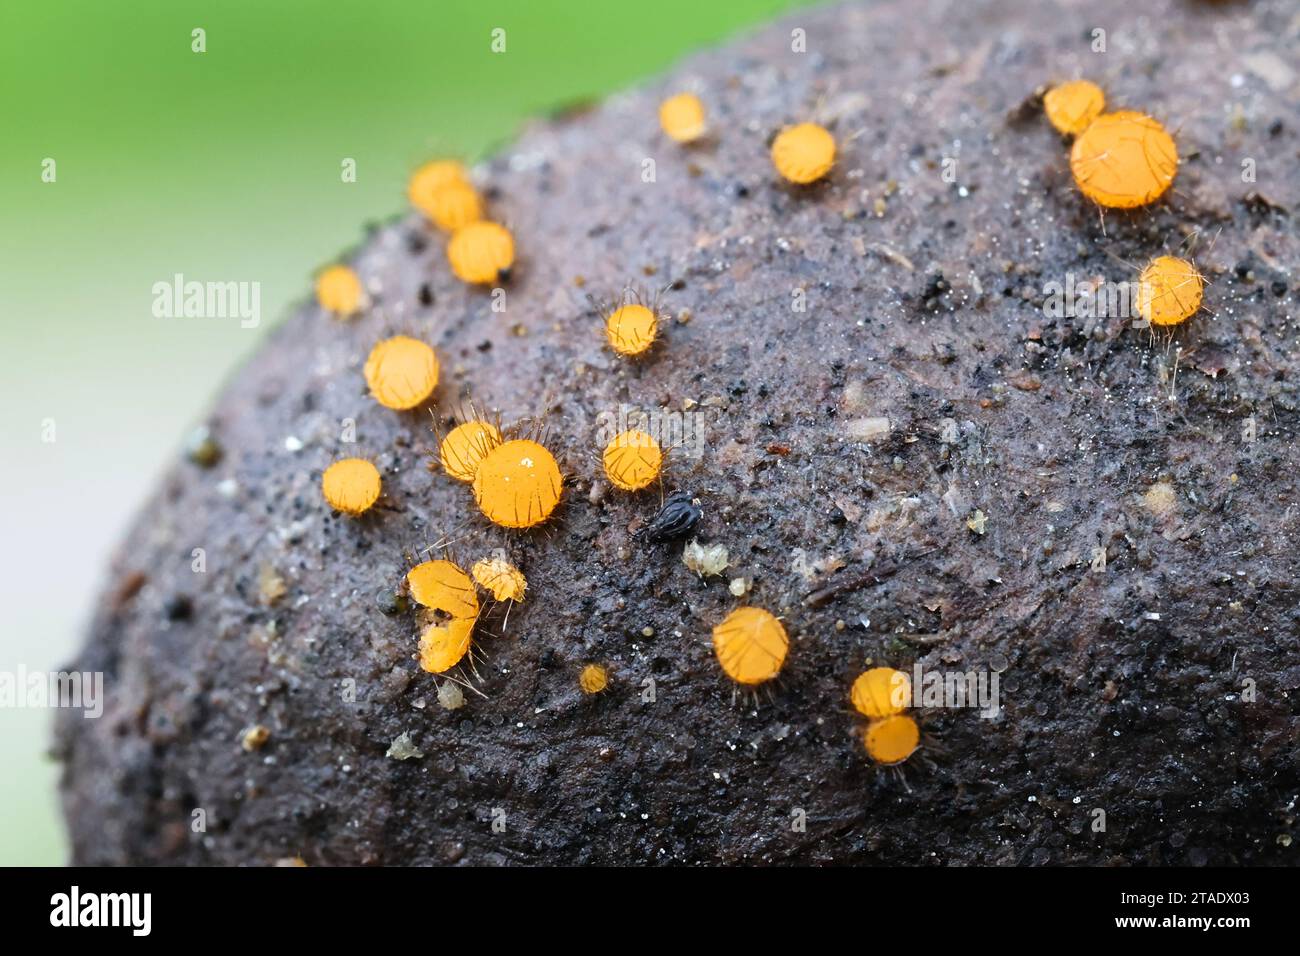 Cheilymenia parvispora, apothecial fungus growing on moose dung in Finland, no common English name Stock Photo